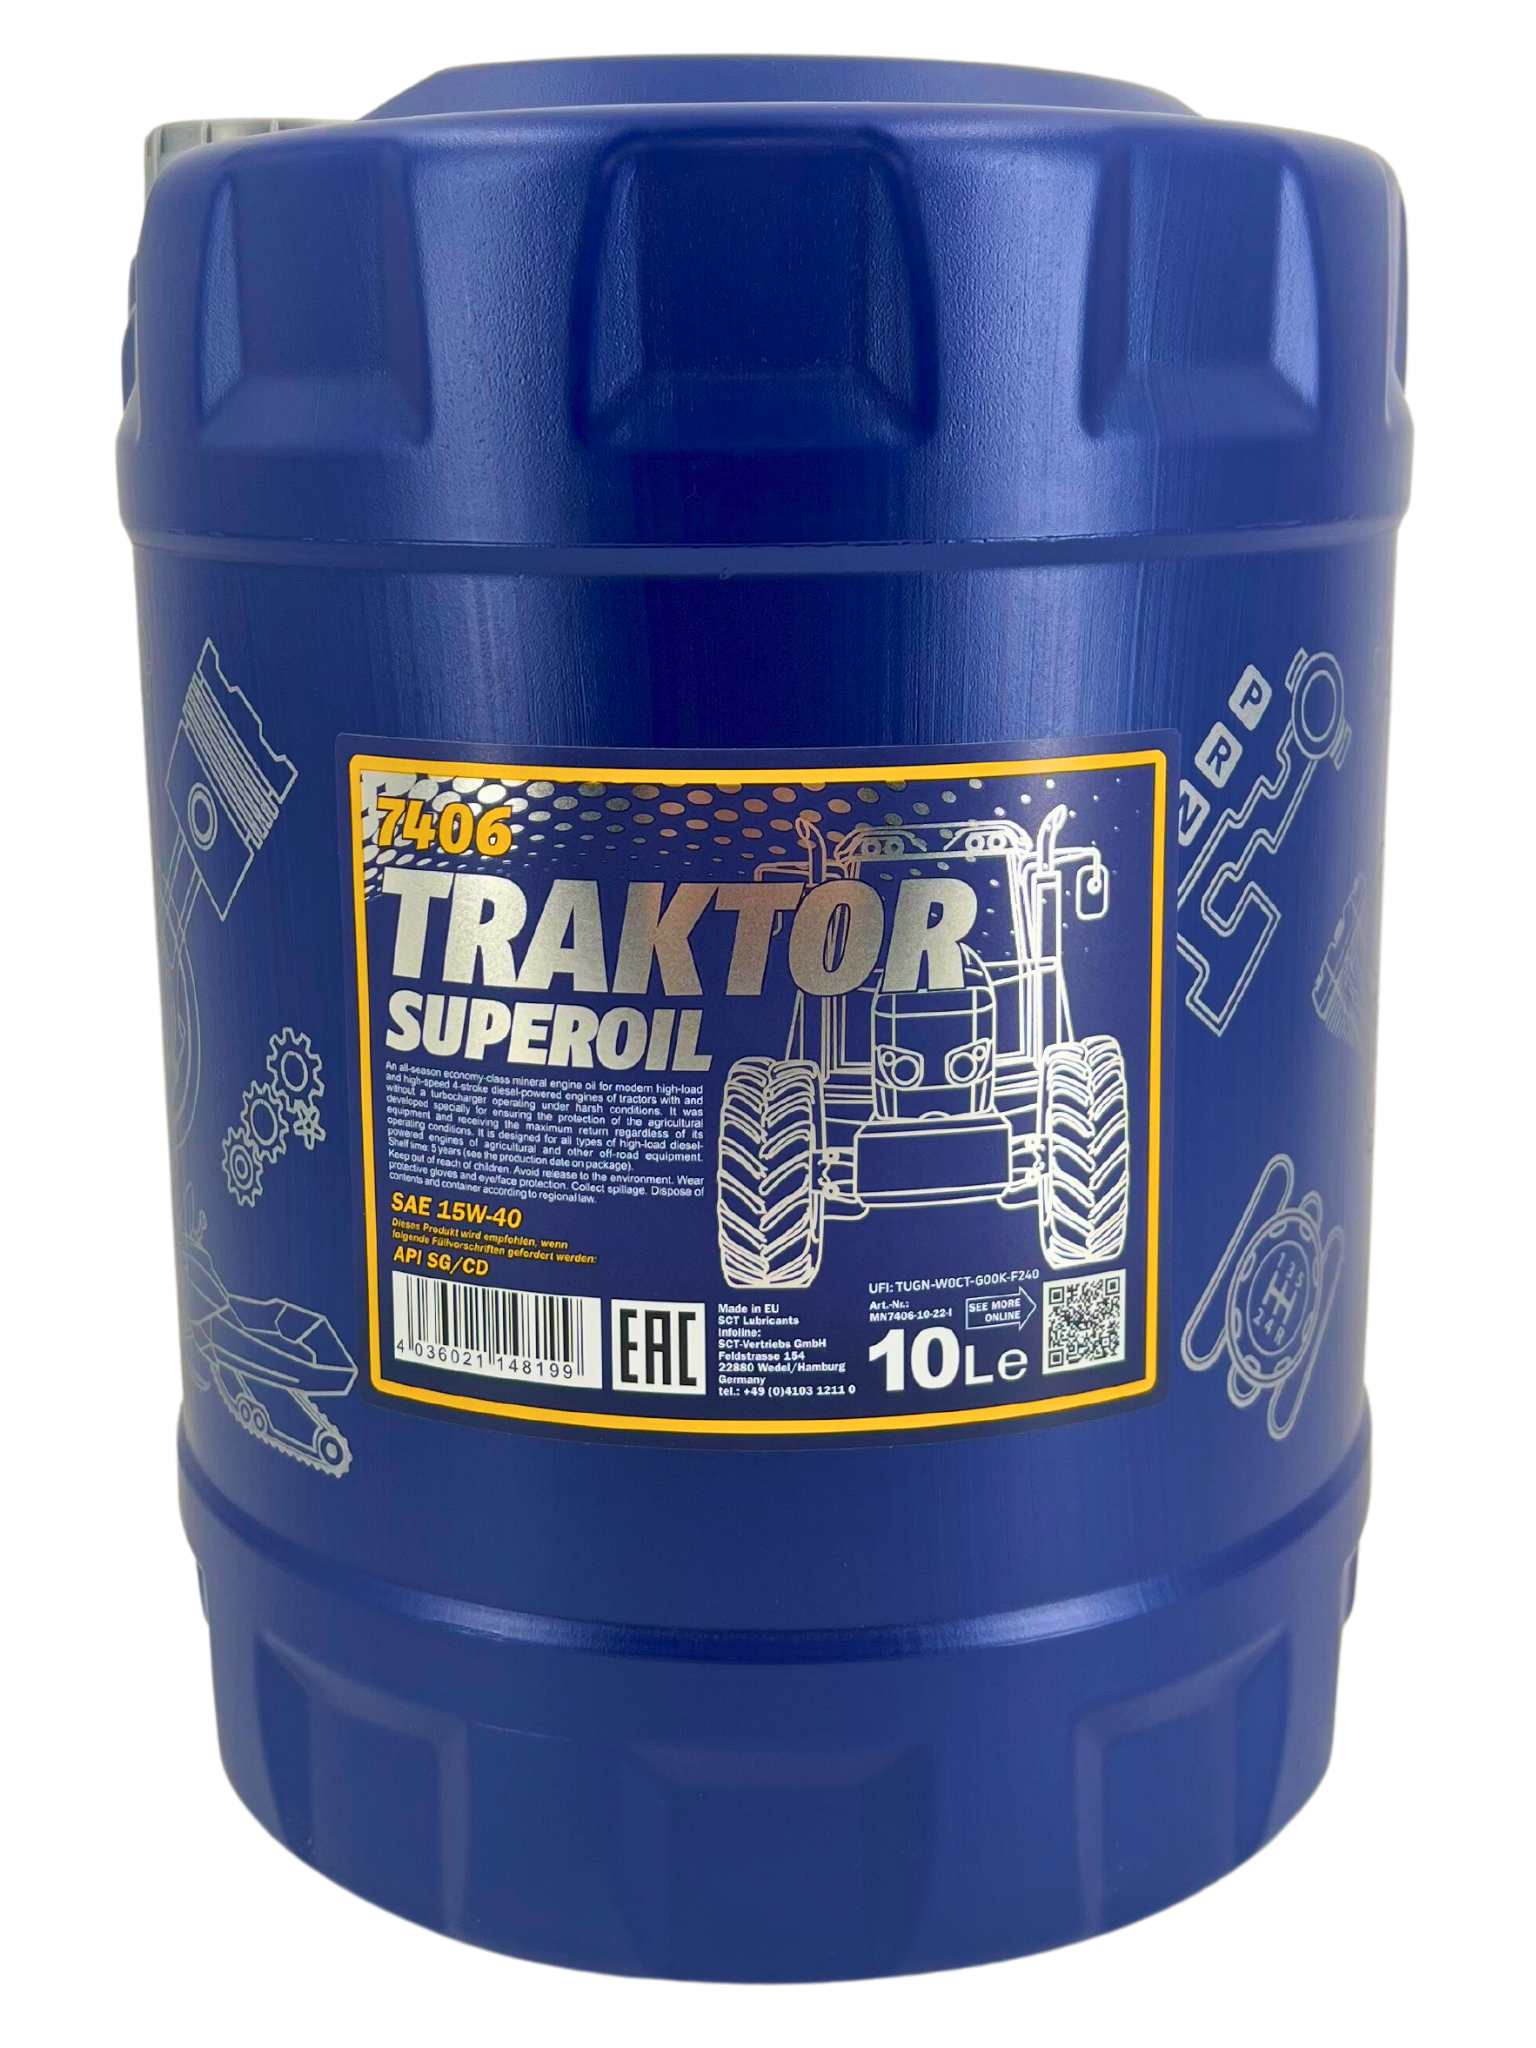 Mannol Traktor Superoil 15W-40 10 Liter